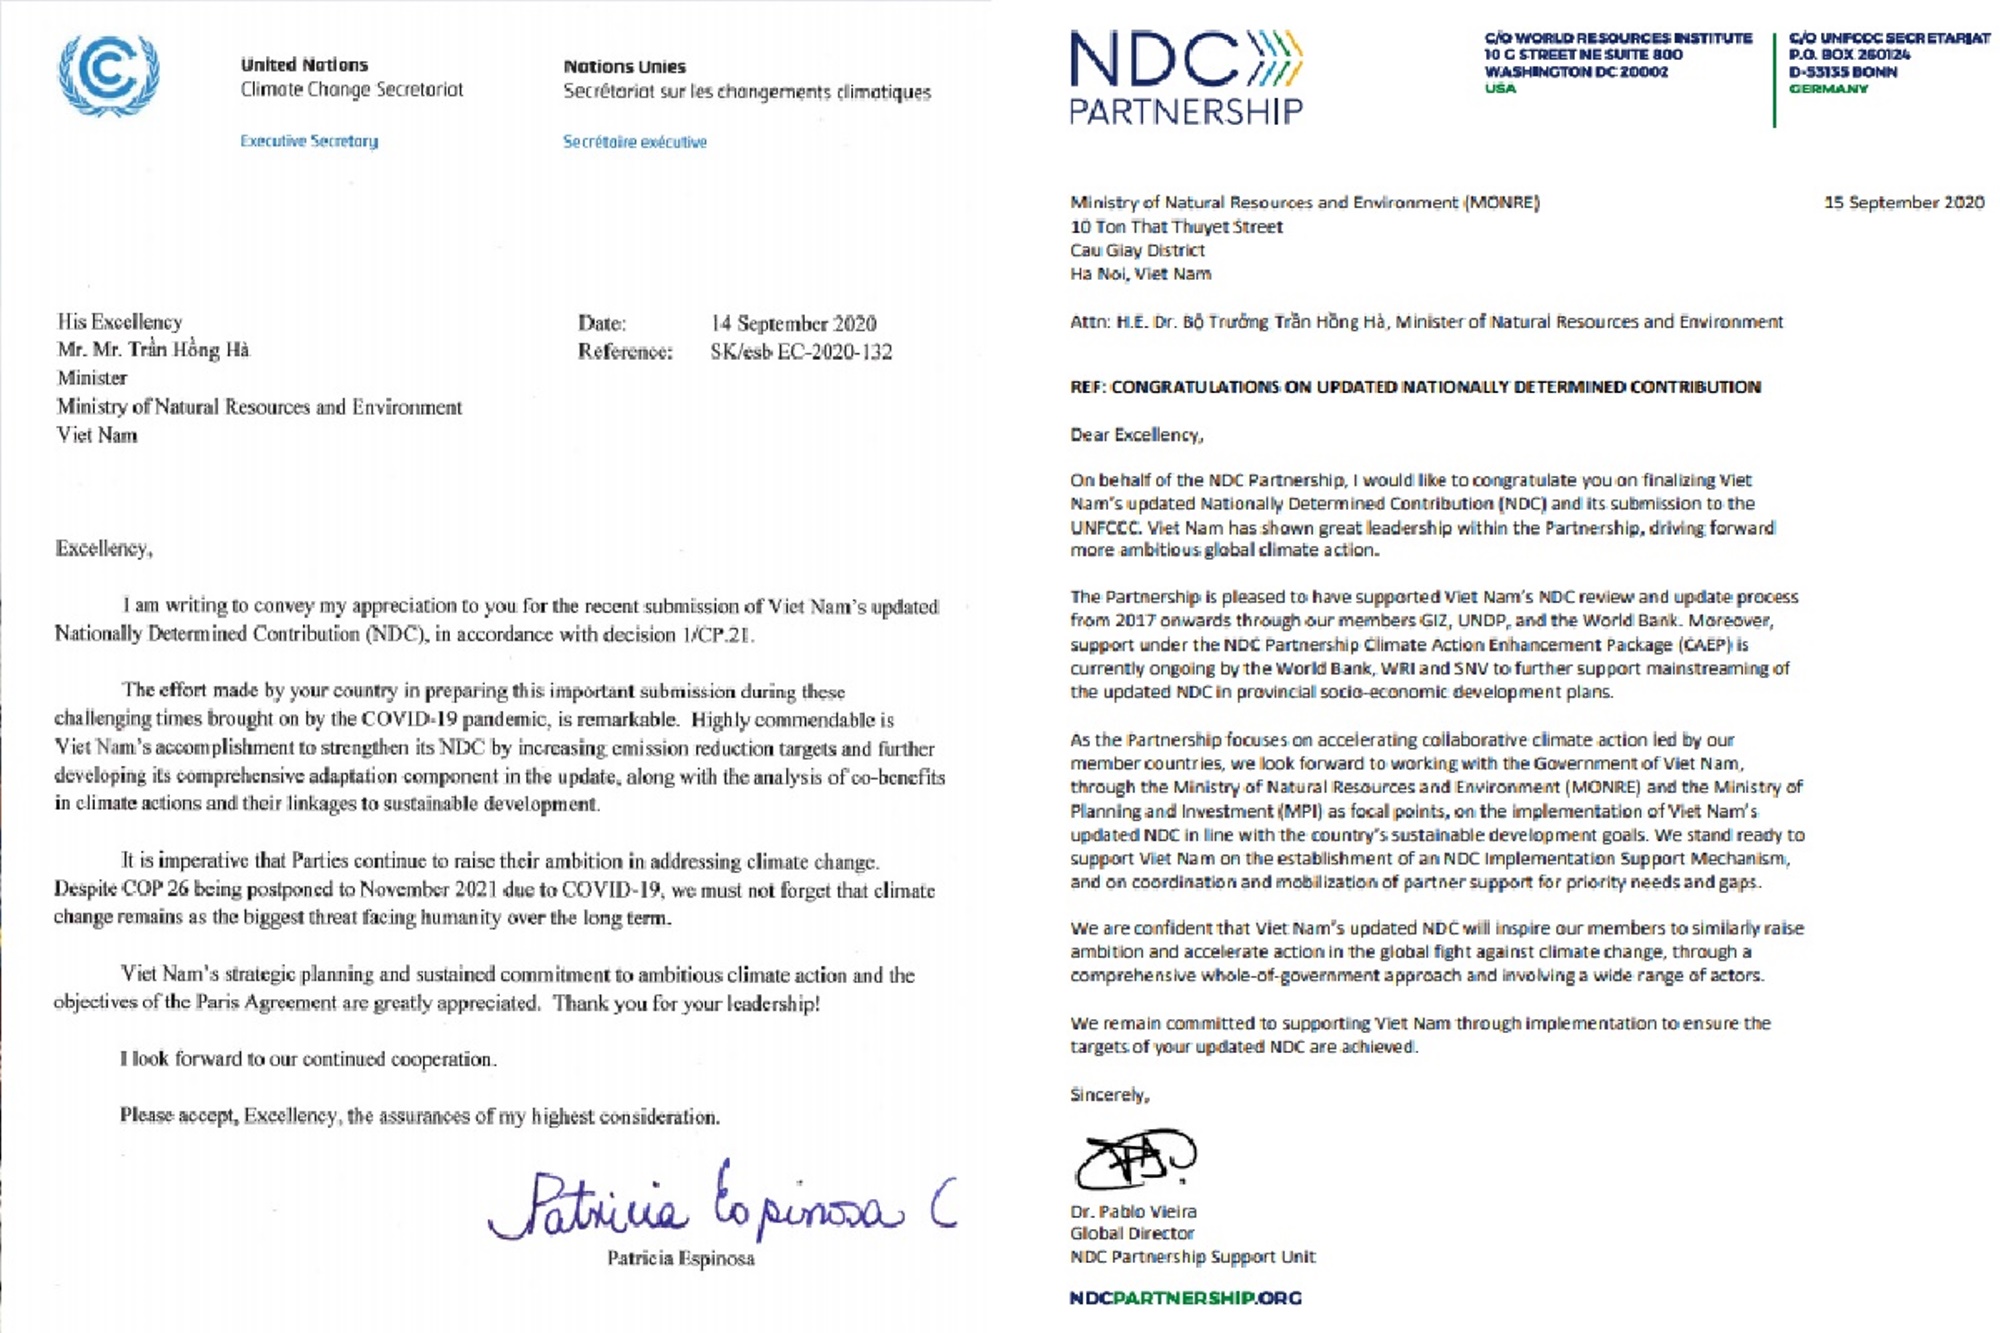 Lettres de Patricia Espinosa, secrétaire exécutive de l’UNFCC et de Pablo Vieira, directeur de l’Organisation NDC Partnership, envoyées au ministre des Ressources naturelles et de l’Environnement. Photo : Département de la résilience au changement climatique.